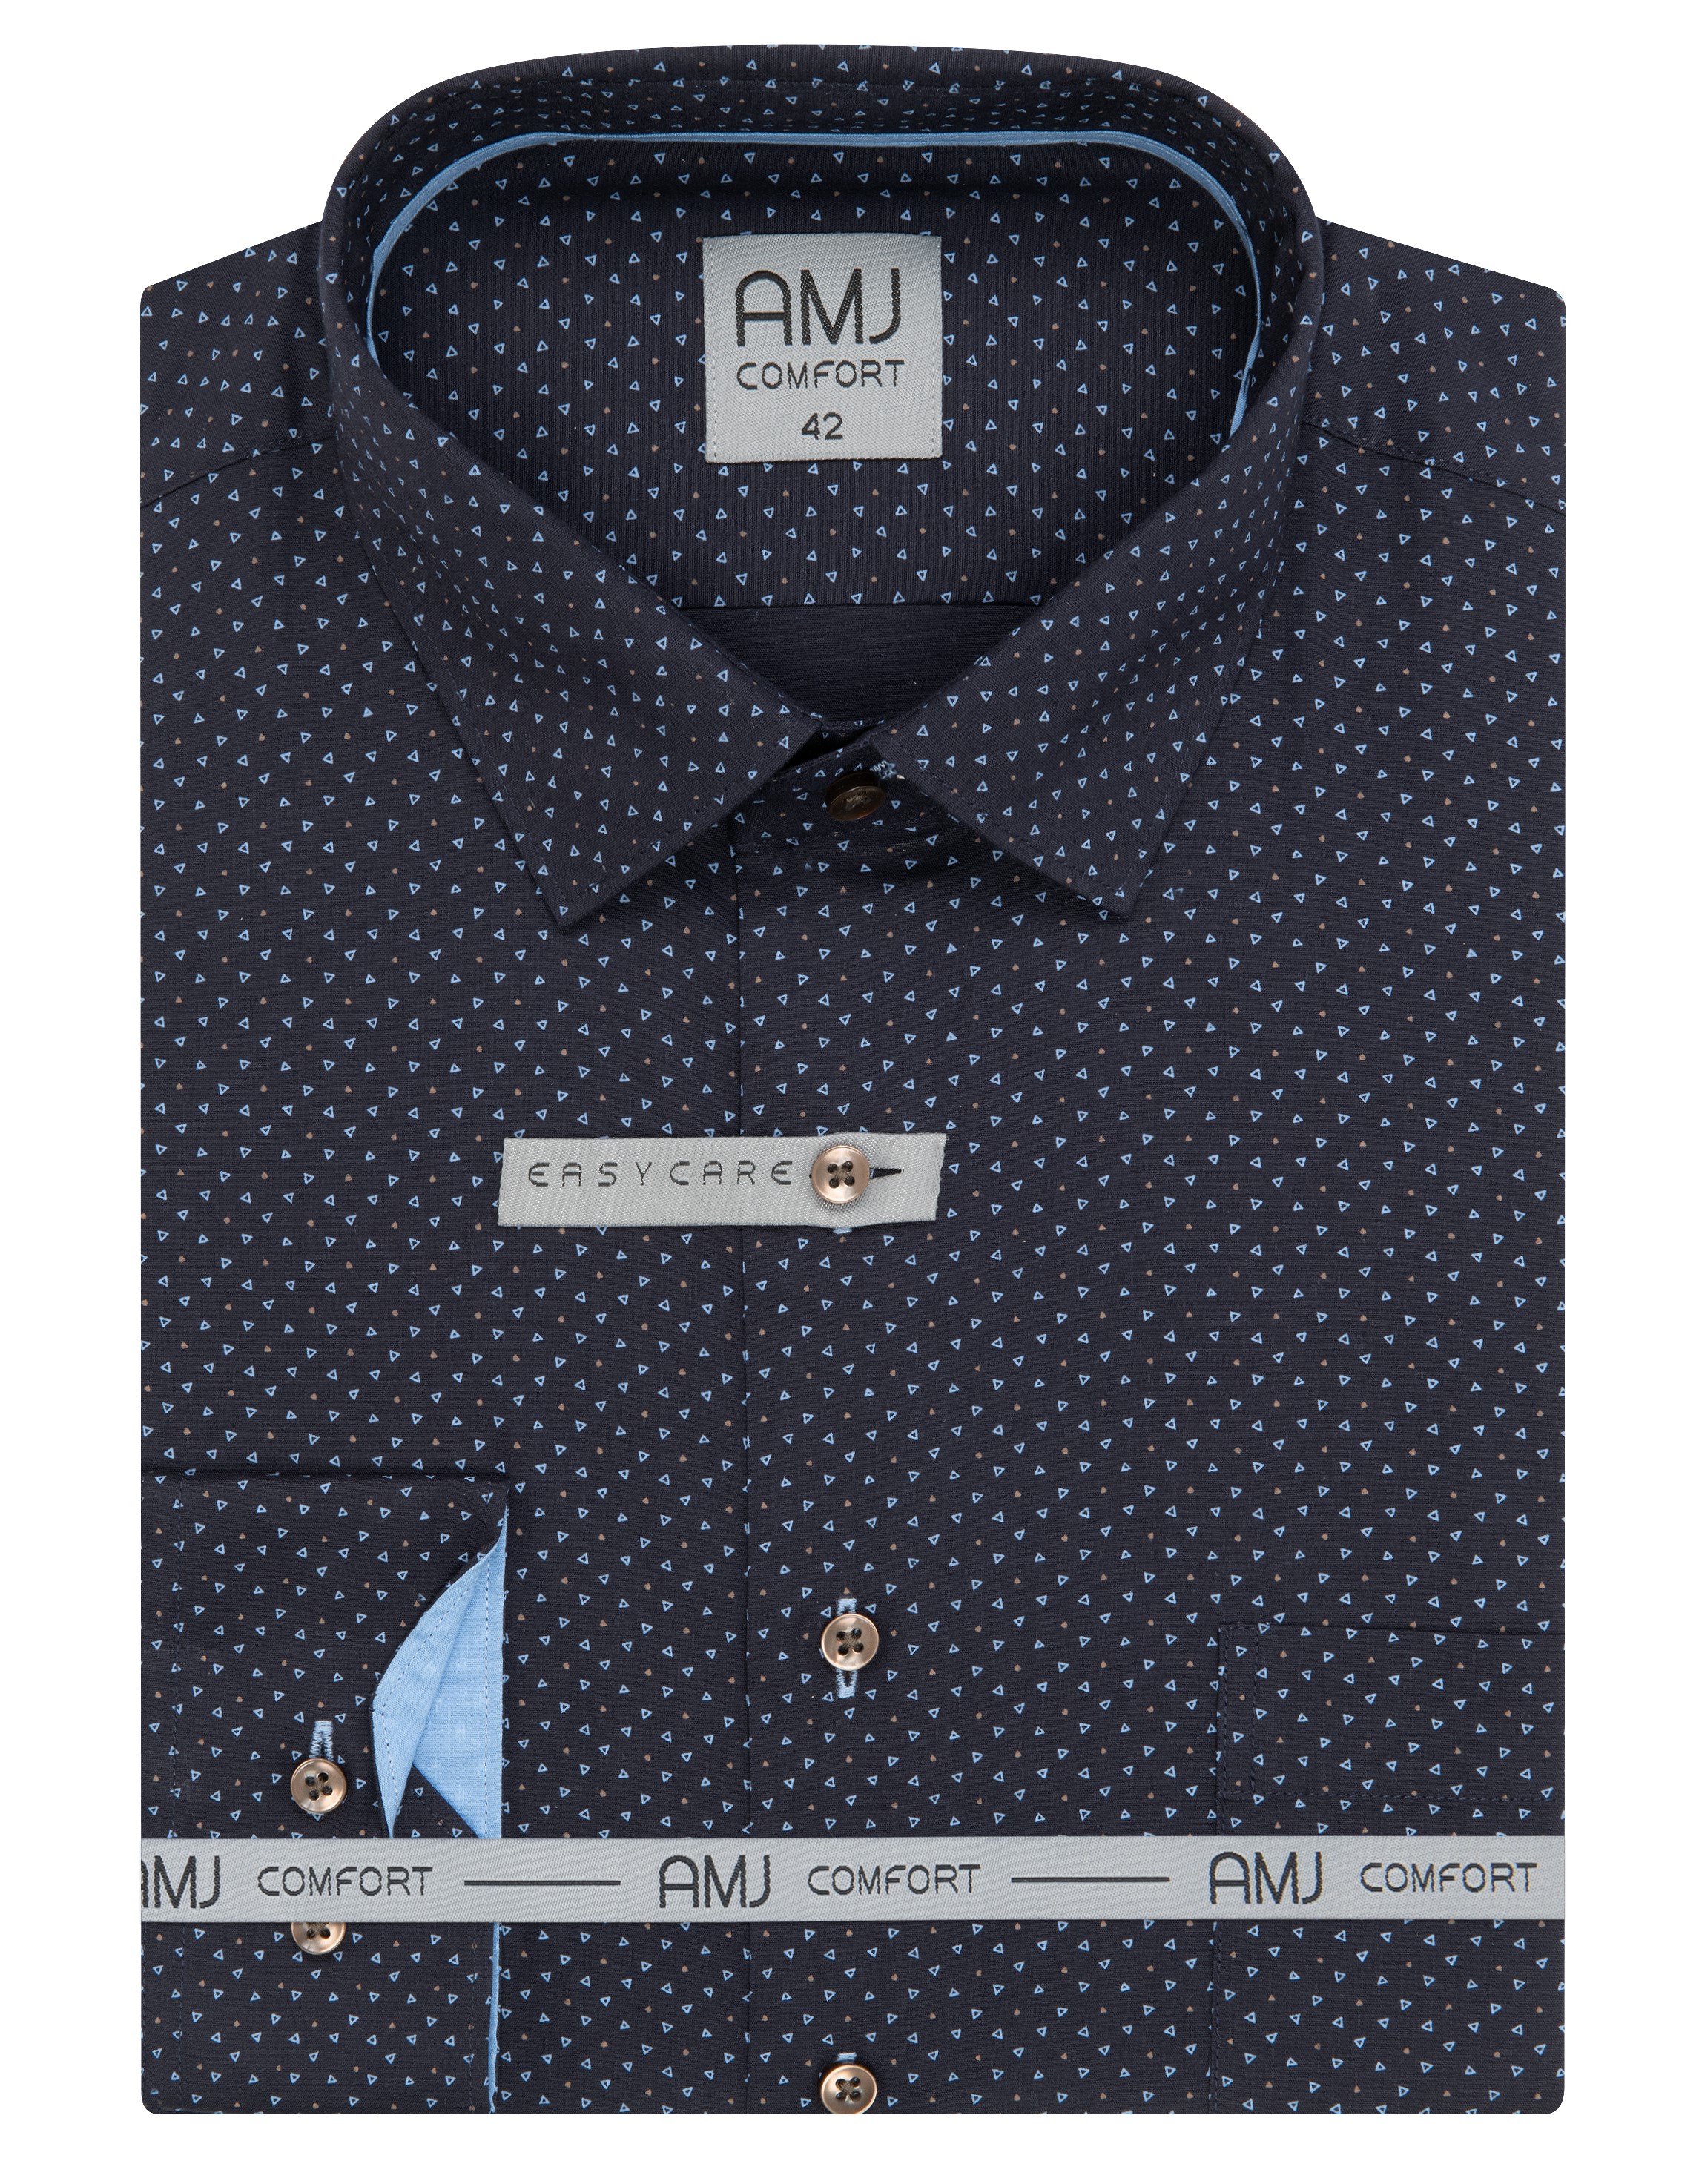 Pánská košile dlouhý rukáv AMJ VDSBR 1331 Slim Fit Comfort Velikost: 41